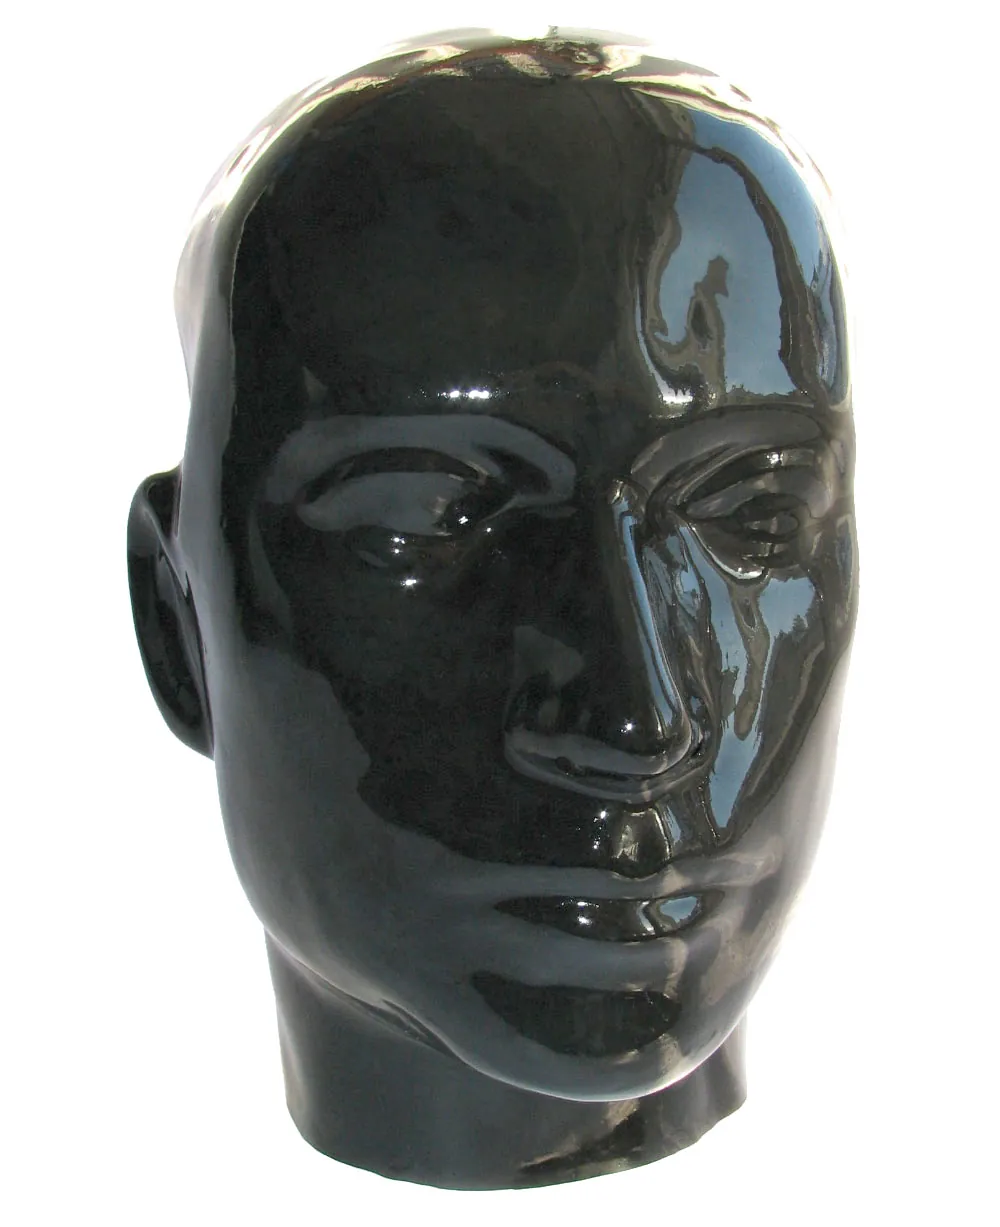 Černá latexová maska s otvory na přání (tenká a silná). Cena 500 Kč + příplatek za otvory (50 Kč/typ)